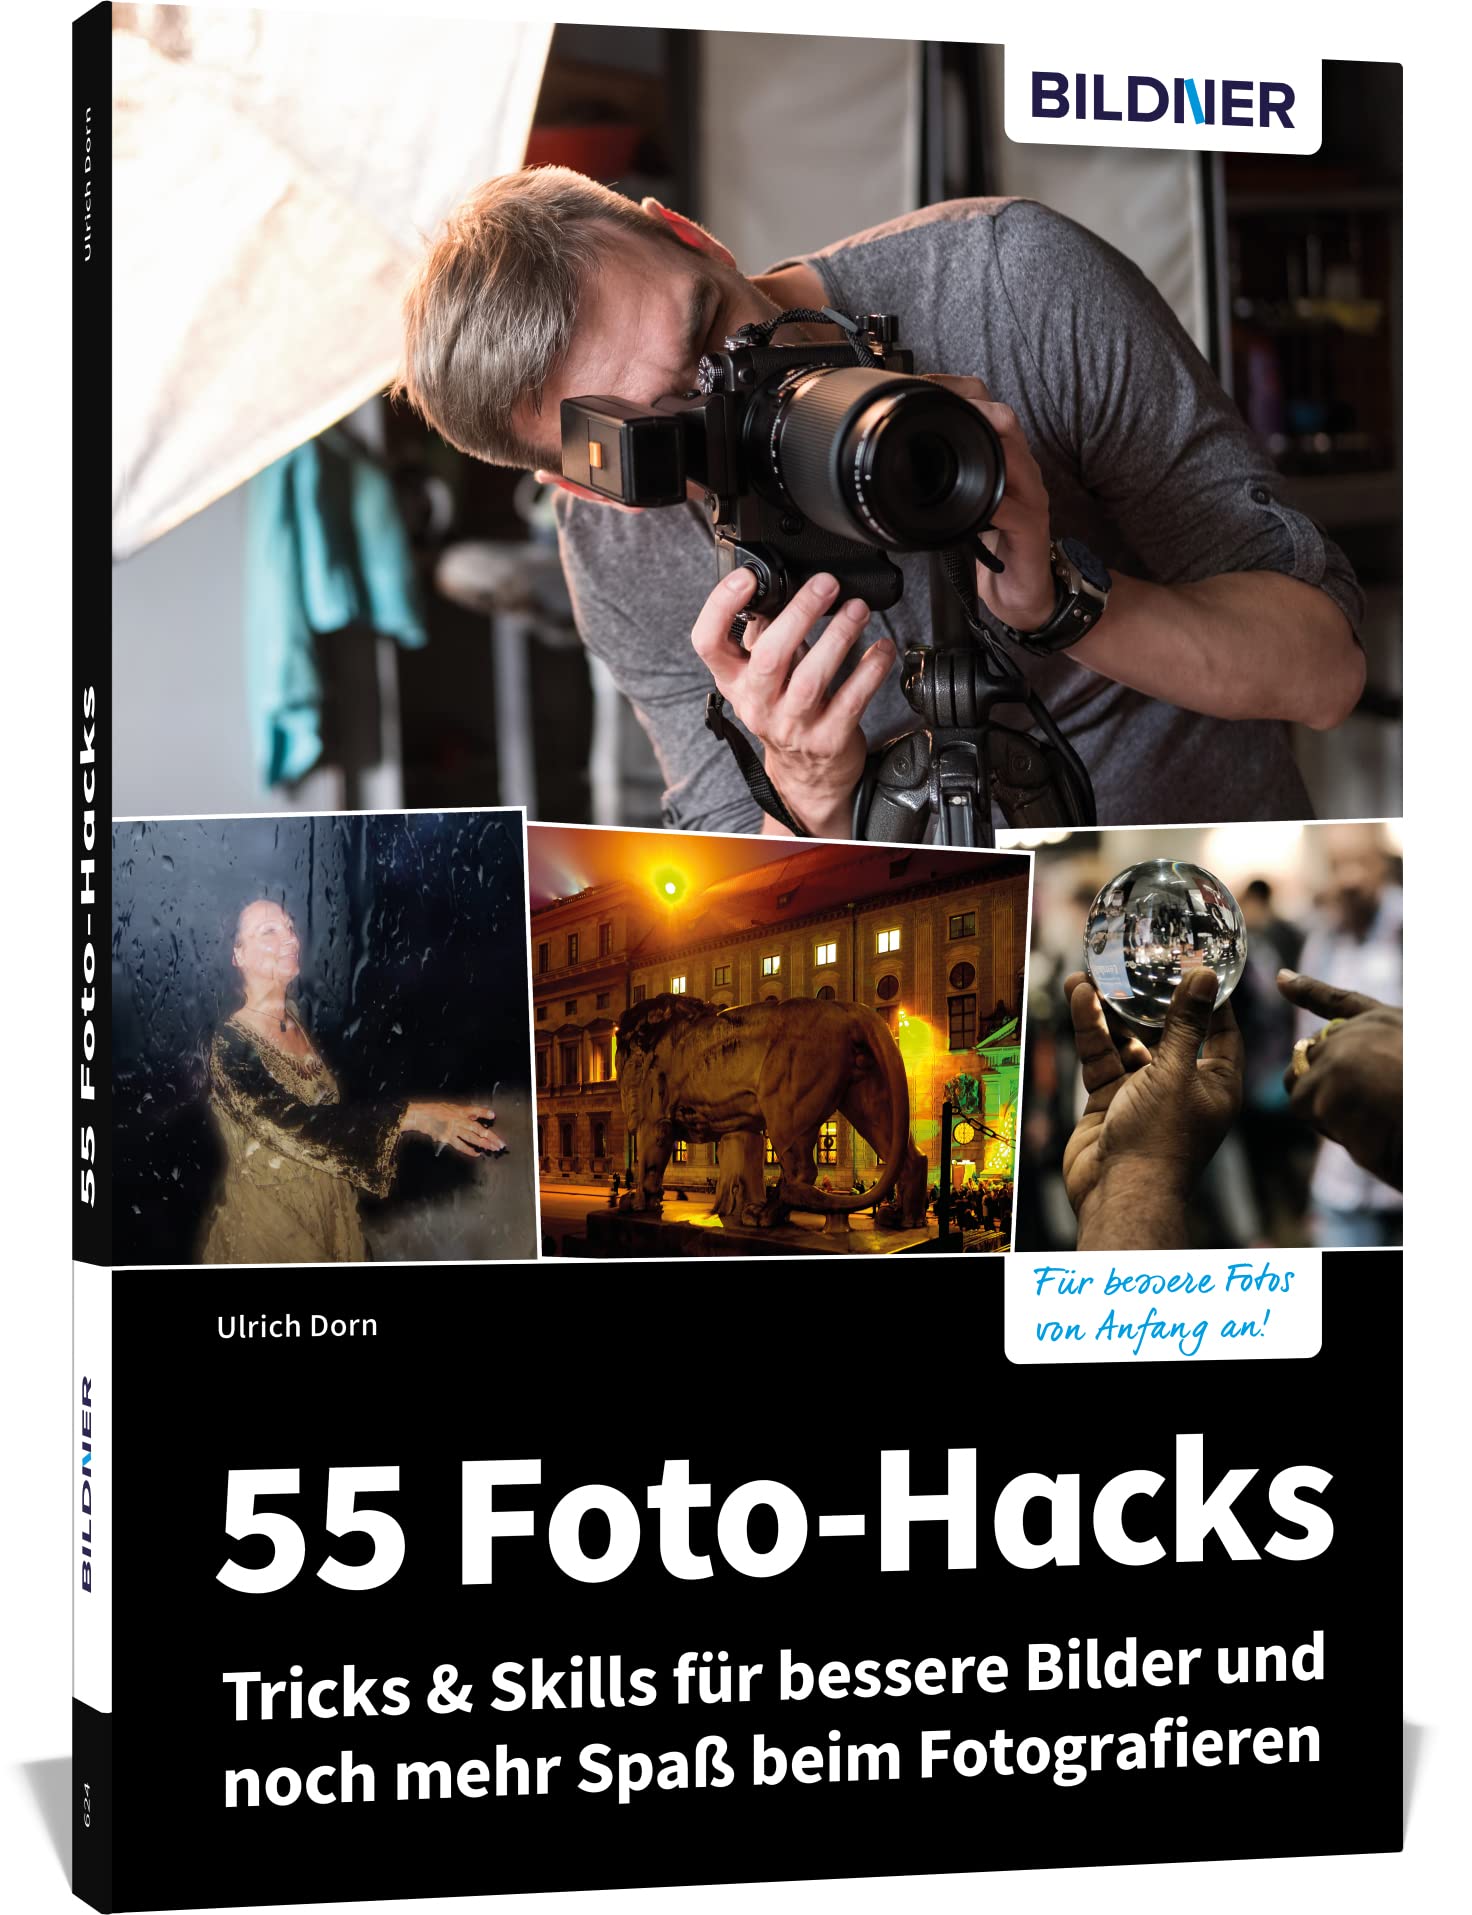 55 Foto-Hacks – Tricks & Skills für bessere Bilder und noch mehr Spaß beim Fotografieren von Ulrich Dorn